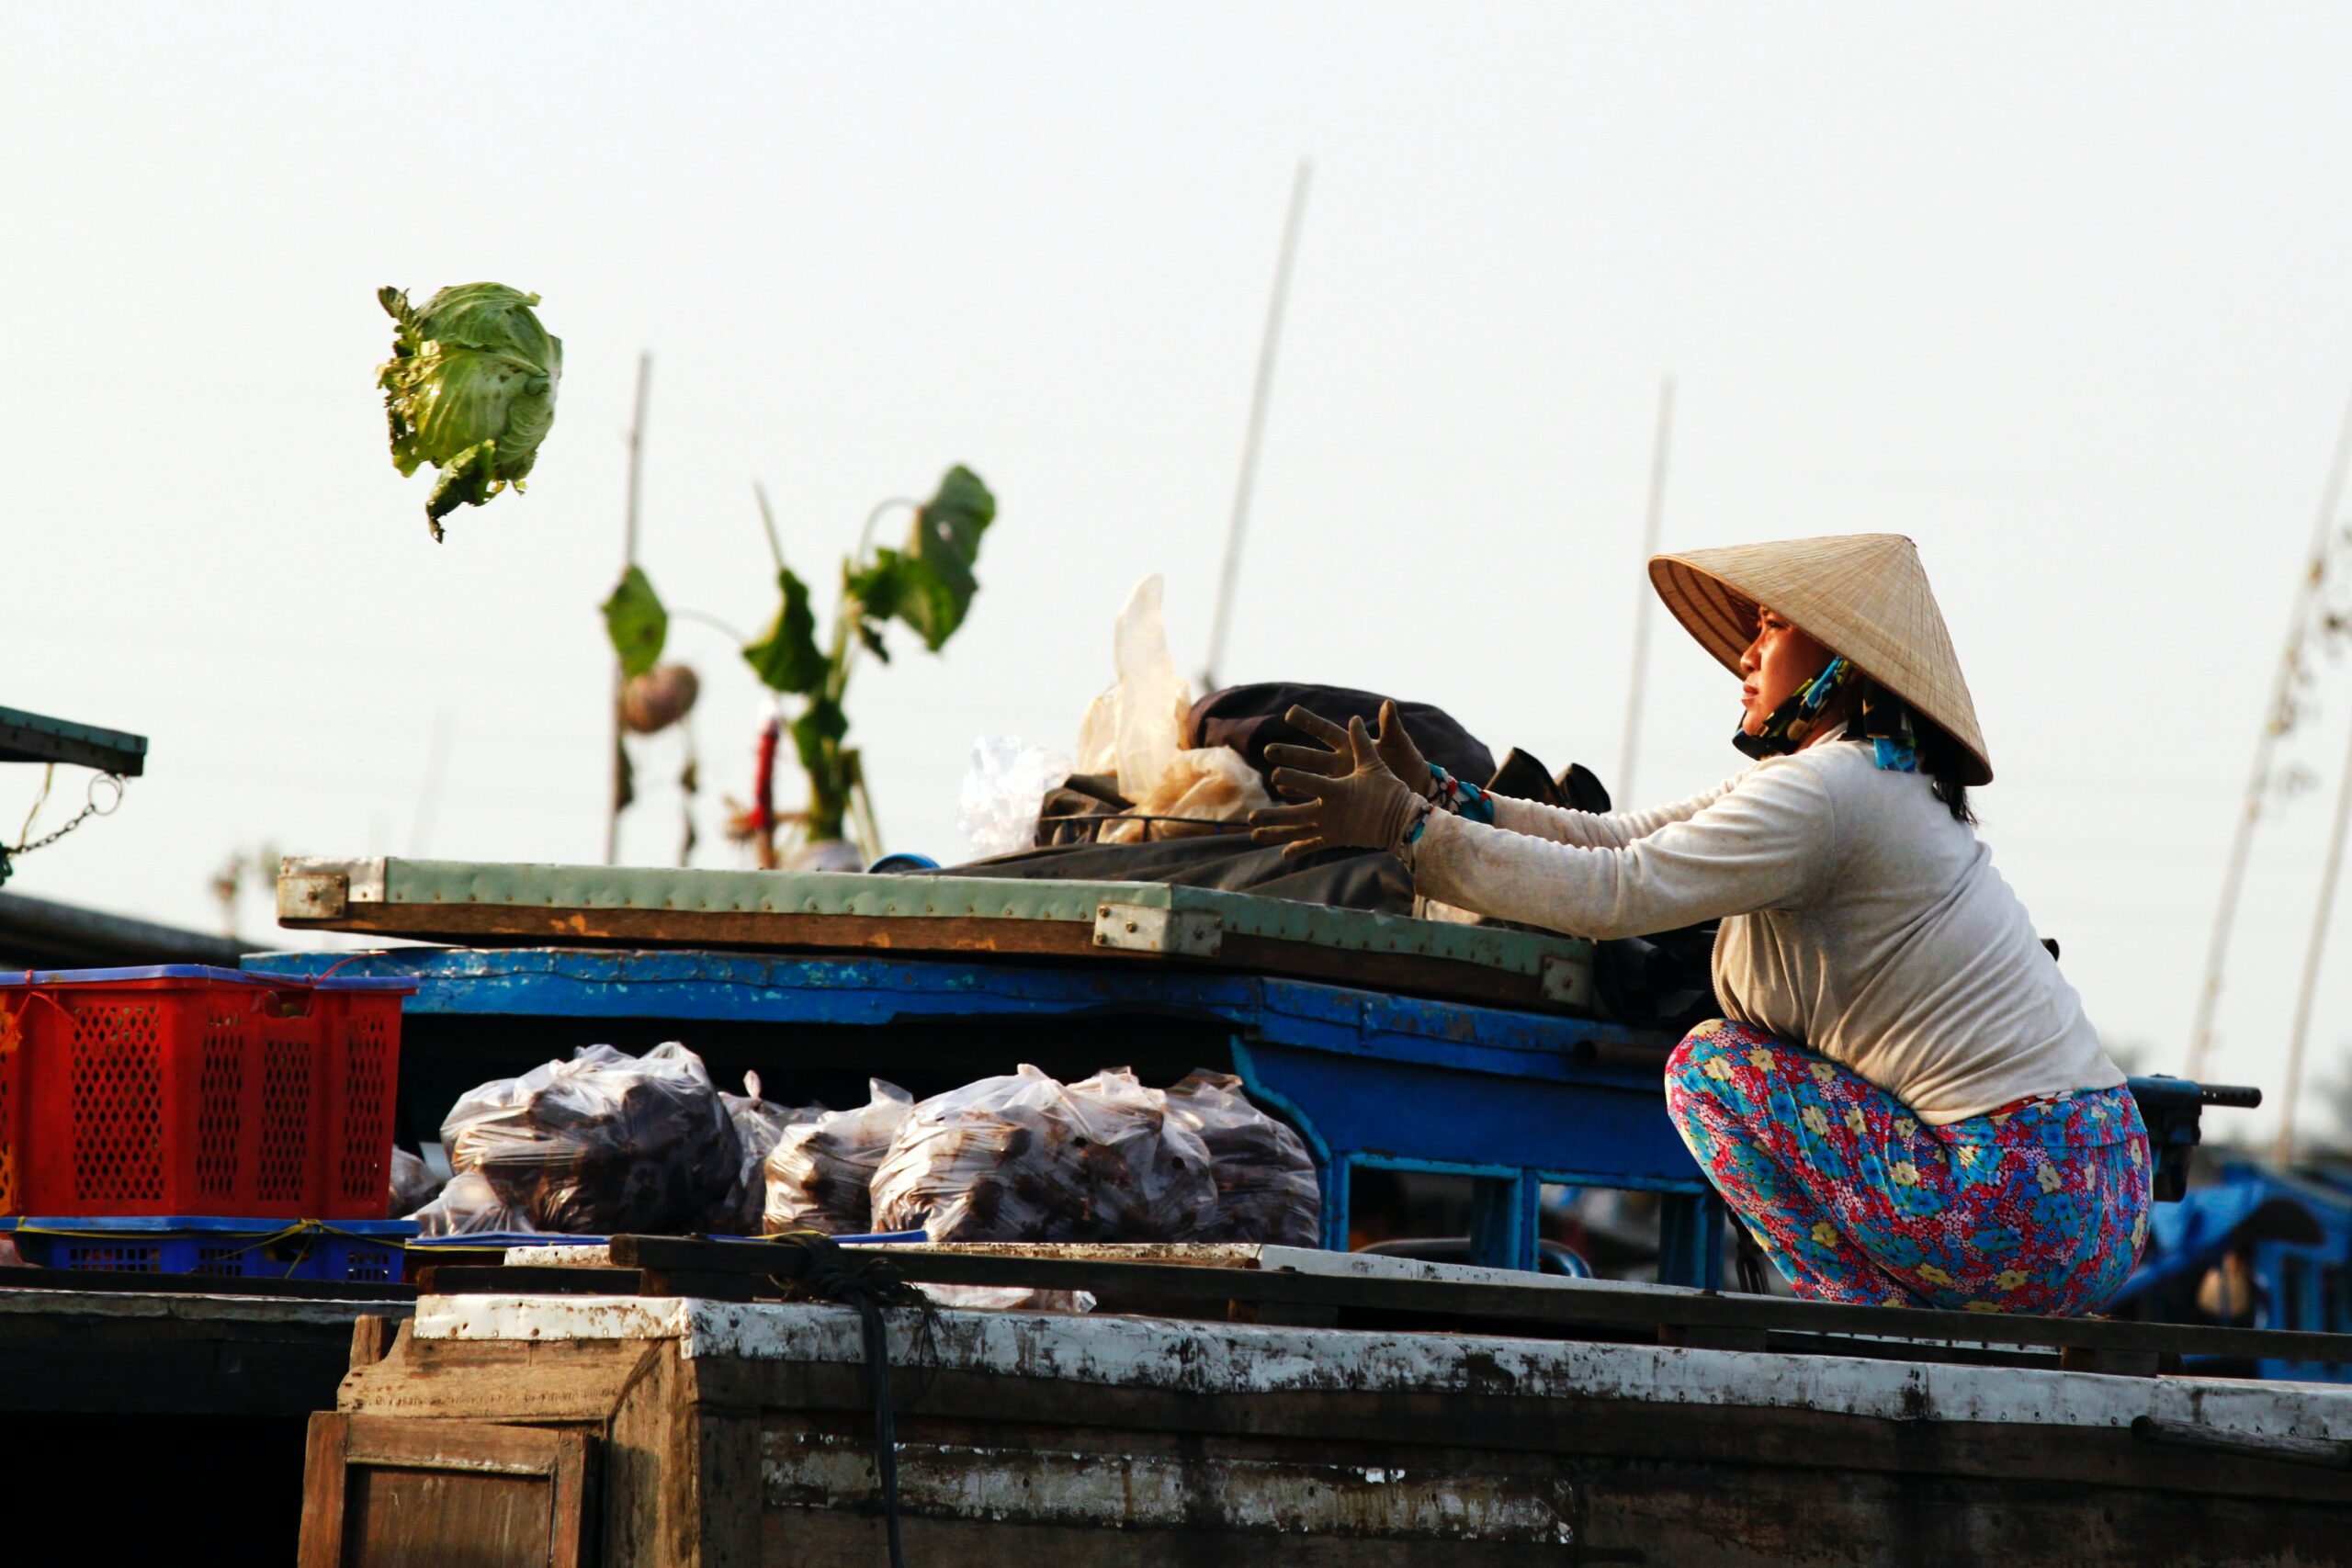 Mujer en un mercado flotante de Vietnam lanzando una lechuga.